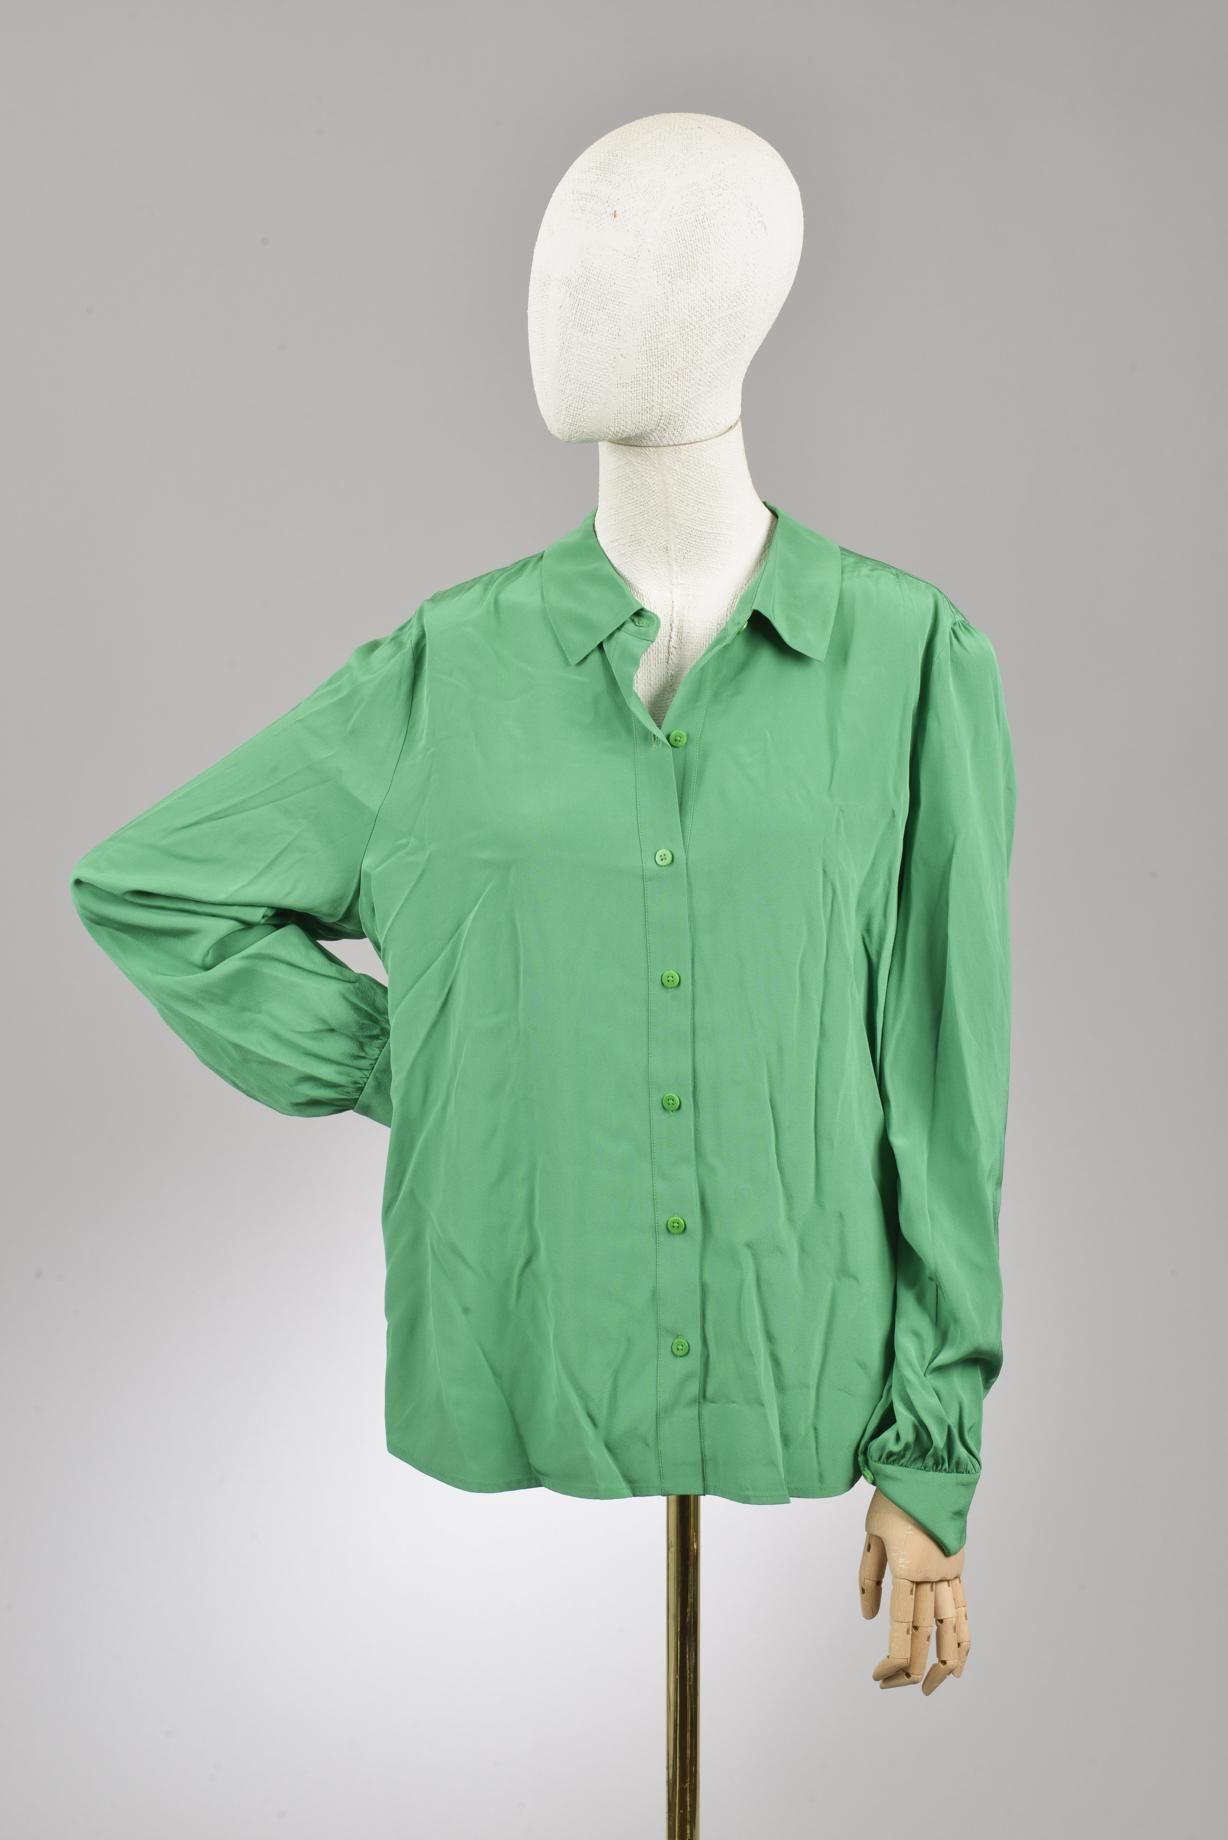 Null *尺寸XS DVF - Diane Von Fürstenberg

套装包括。

-丝质上衣，型号为 "DVF Mariah"，为巴西纯绿色。尖领，&hellip;